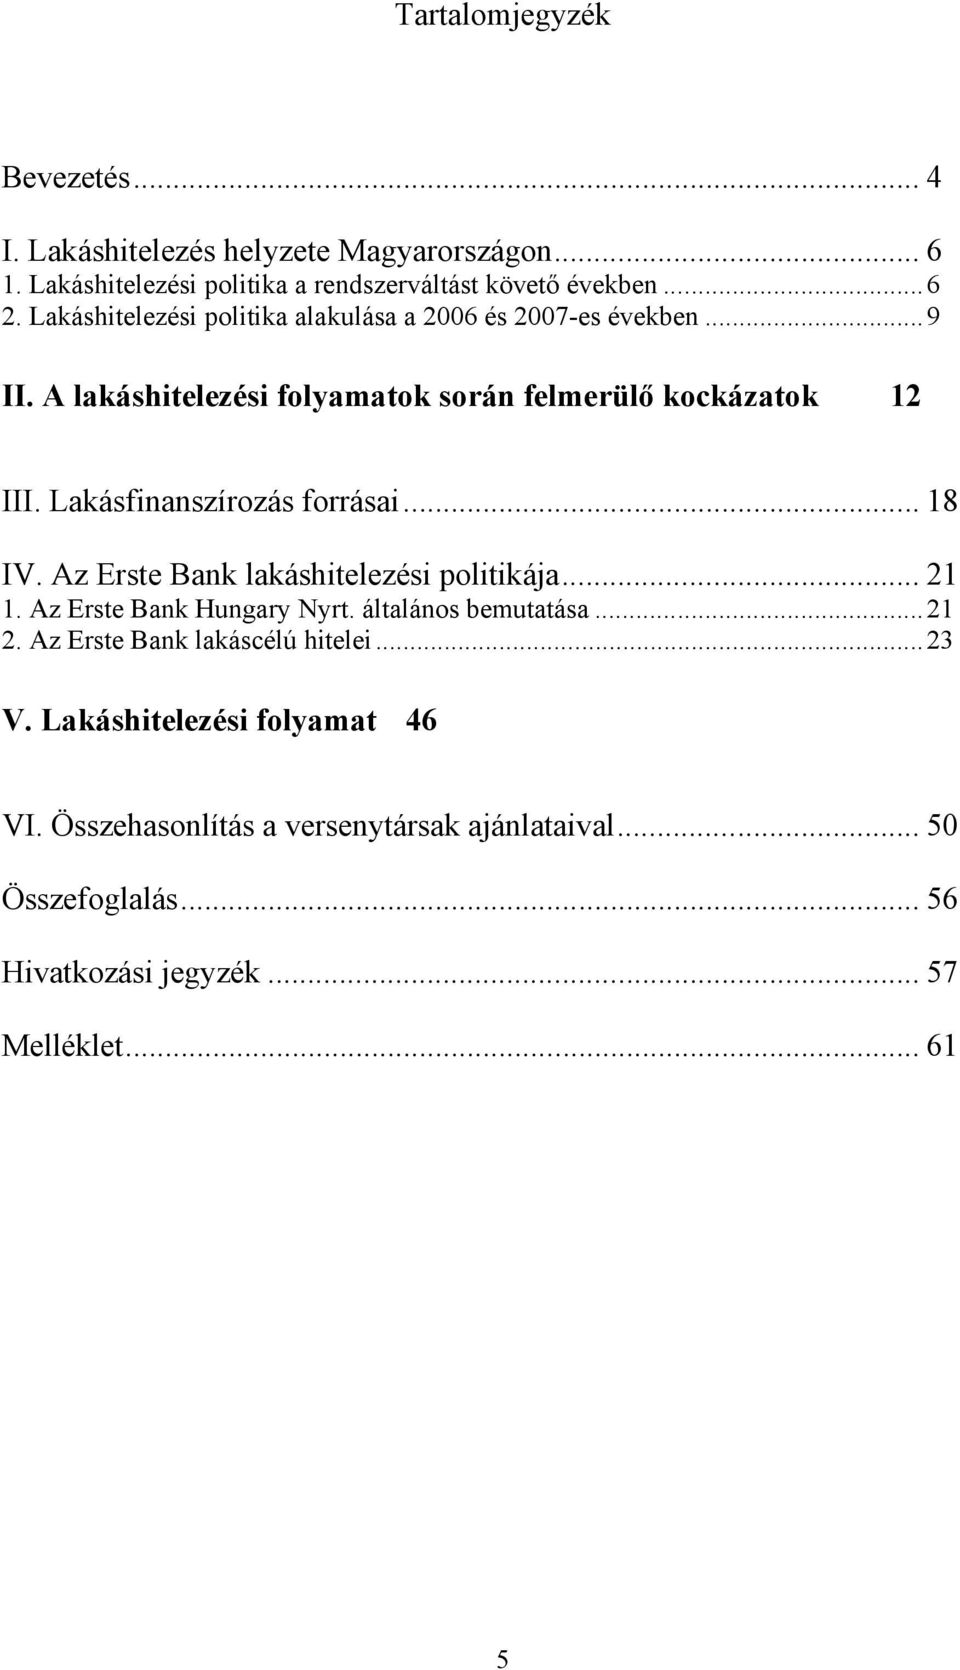 Lakásfinanszírozás forrásai... 18 IV. Az Erste Bank lakáshitelezési politikája... 21 1. Az Erste Bank Hungary Nyrt. általános bemutatása...21 2.